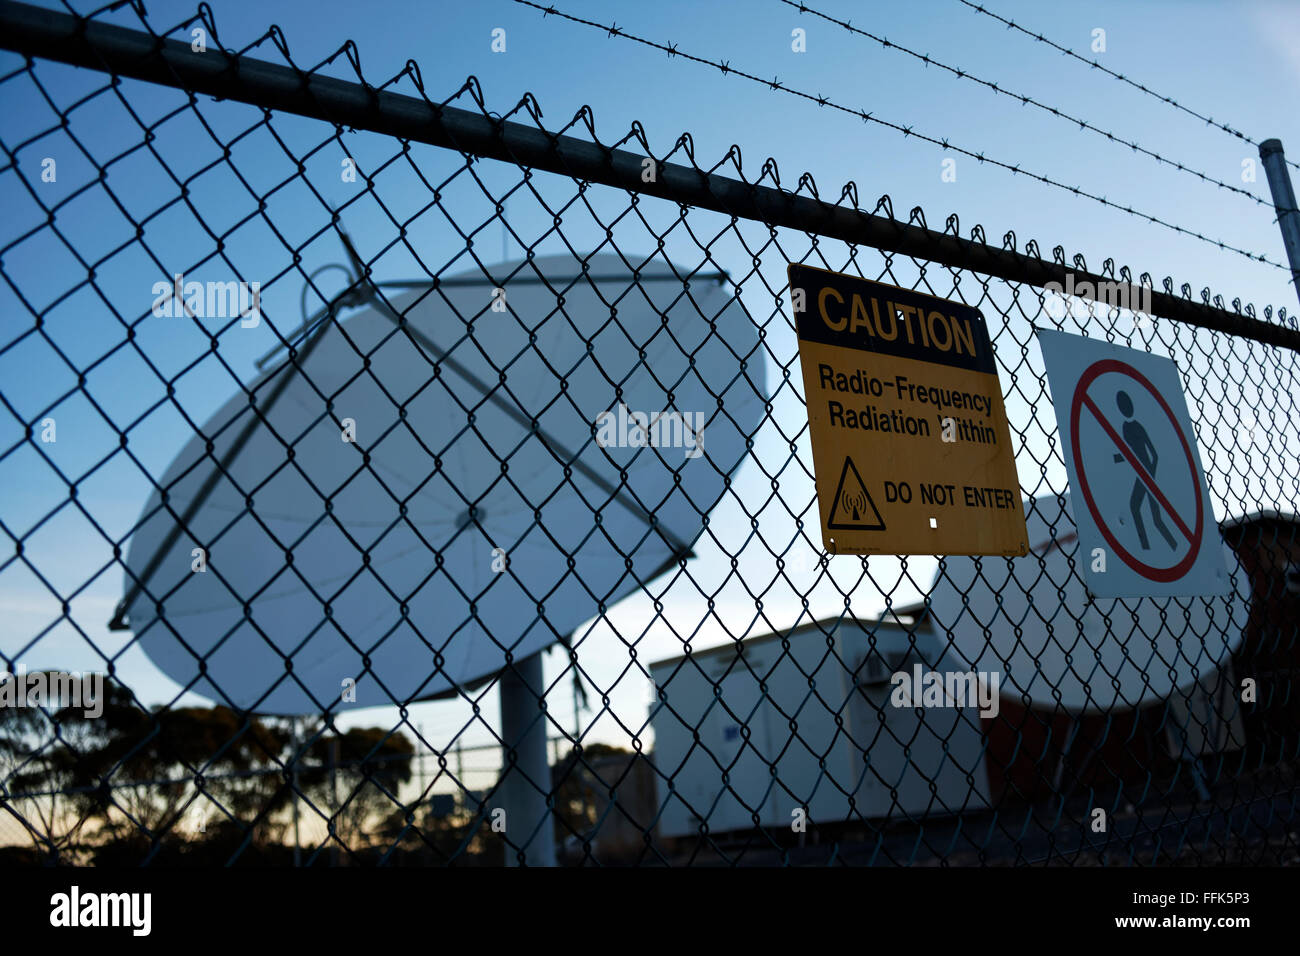 Señal de alerta de radiación en el cerco con Antena Parabólica, Norseman, Australia Occidental Foto de stock